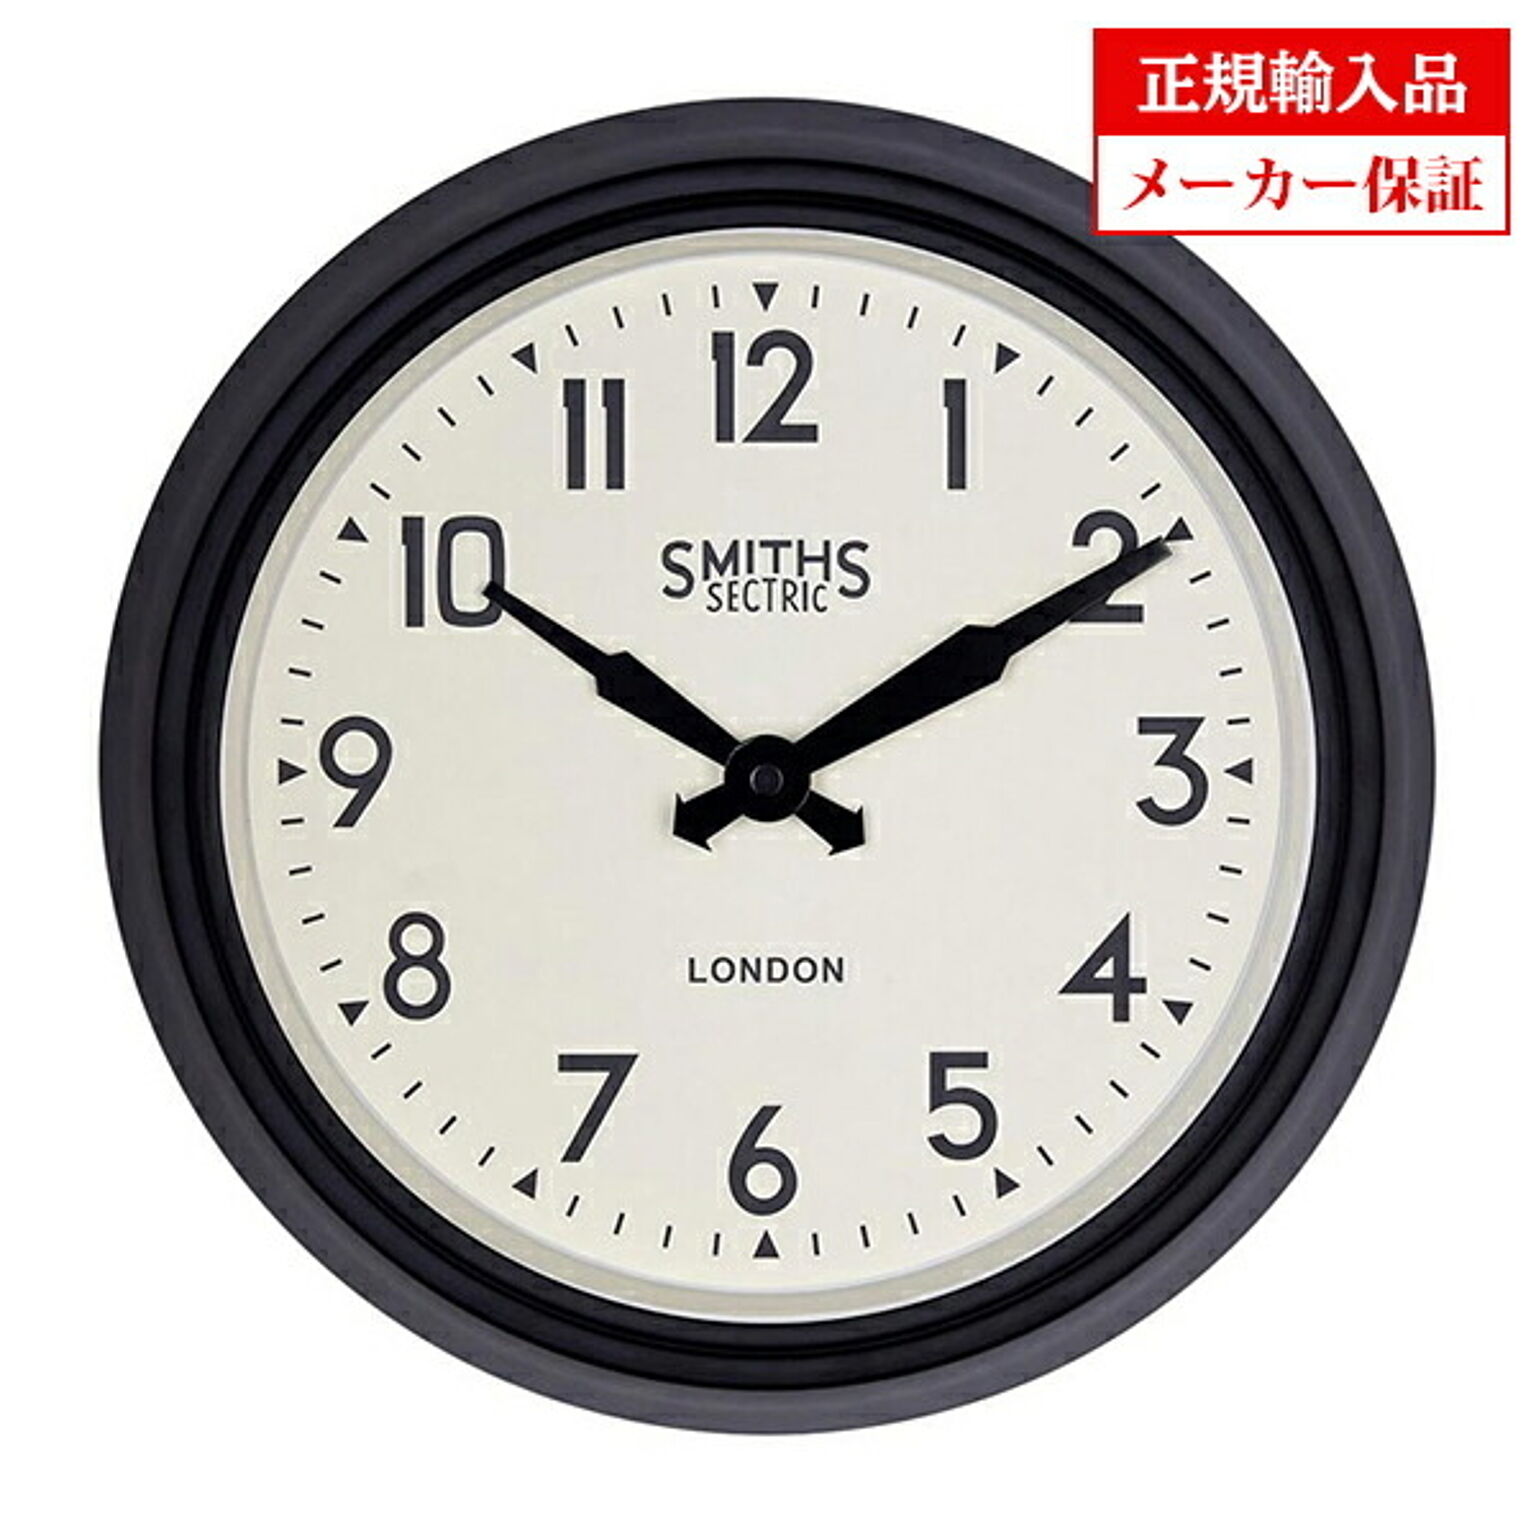 イギリス ロジャーラッセル 掛け時計 [[SM/RETRO/BLACK] ROGER LASCELLES レトロ スミスデザイン 正規輸入品